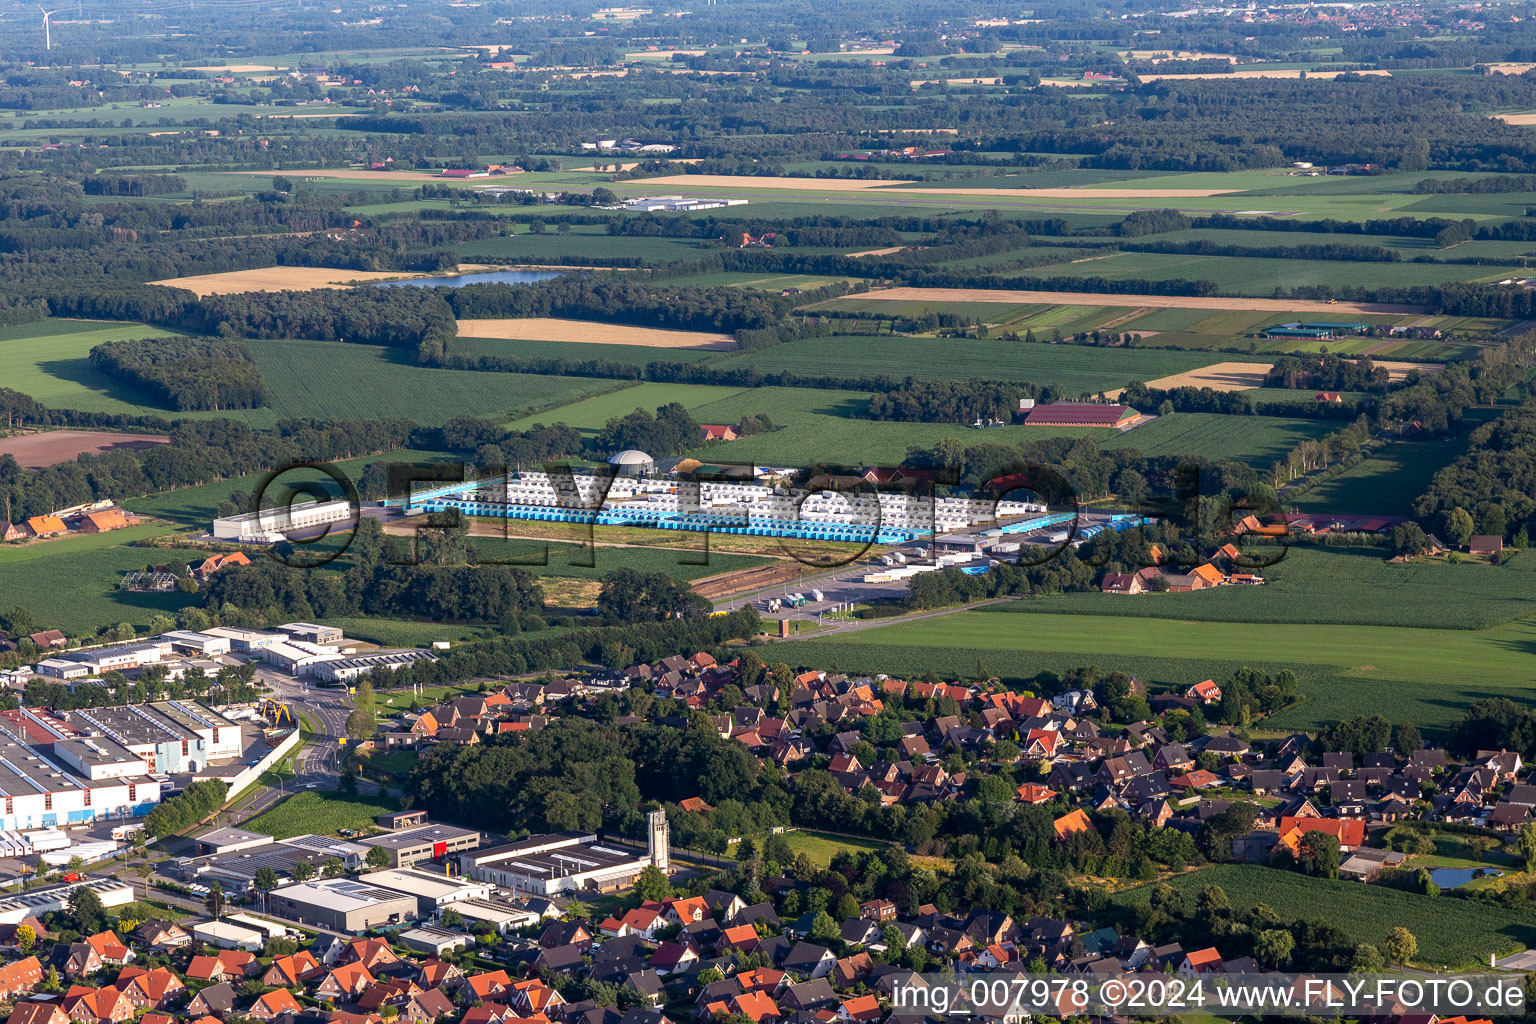 Vue aérienne de Complexe immobilier et terrain du centre logistique Schmitz cargobull à Vreden dans le département Rhénanie du Nord-Westphalie, Allemagne